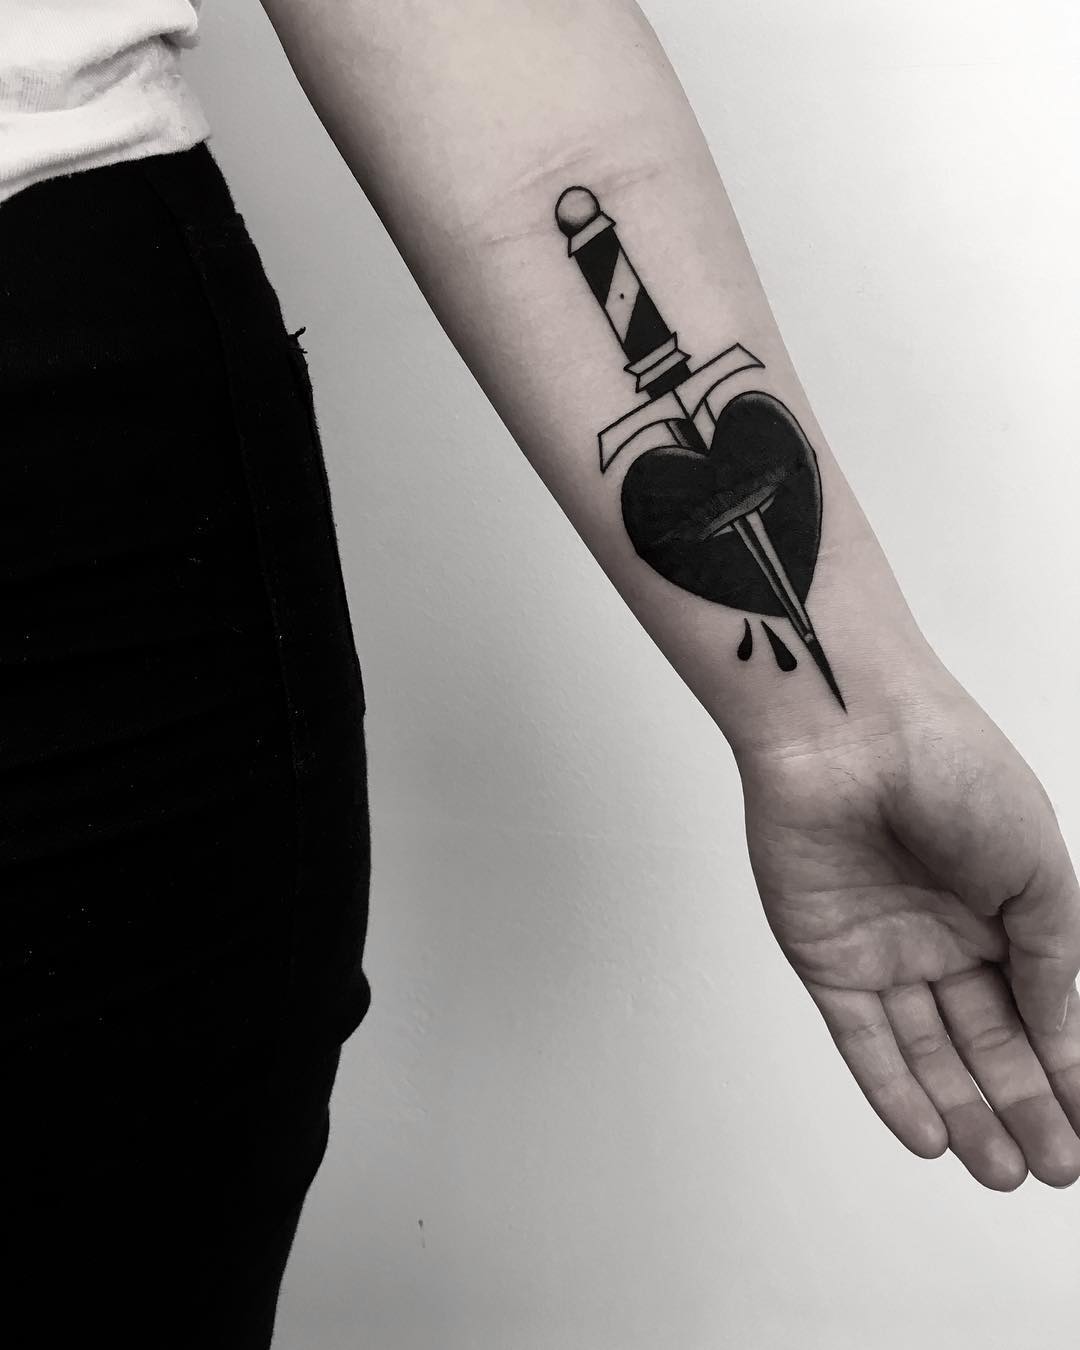 Scar cover-up tattoo by Krzysztof Szeszko